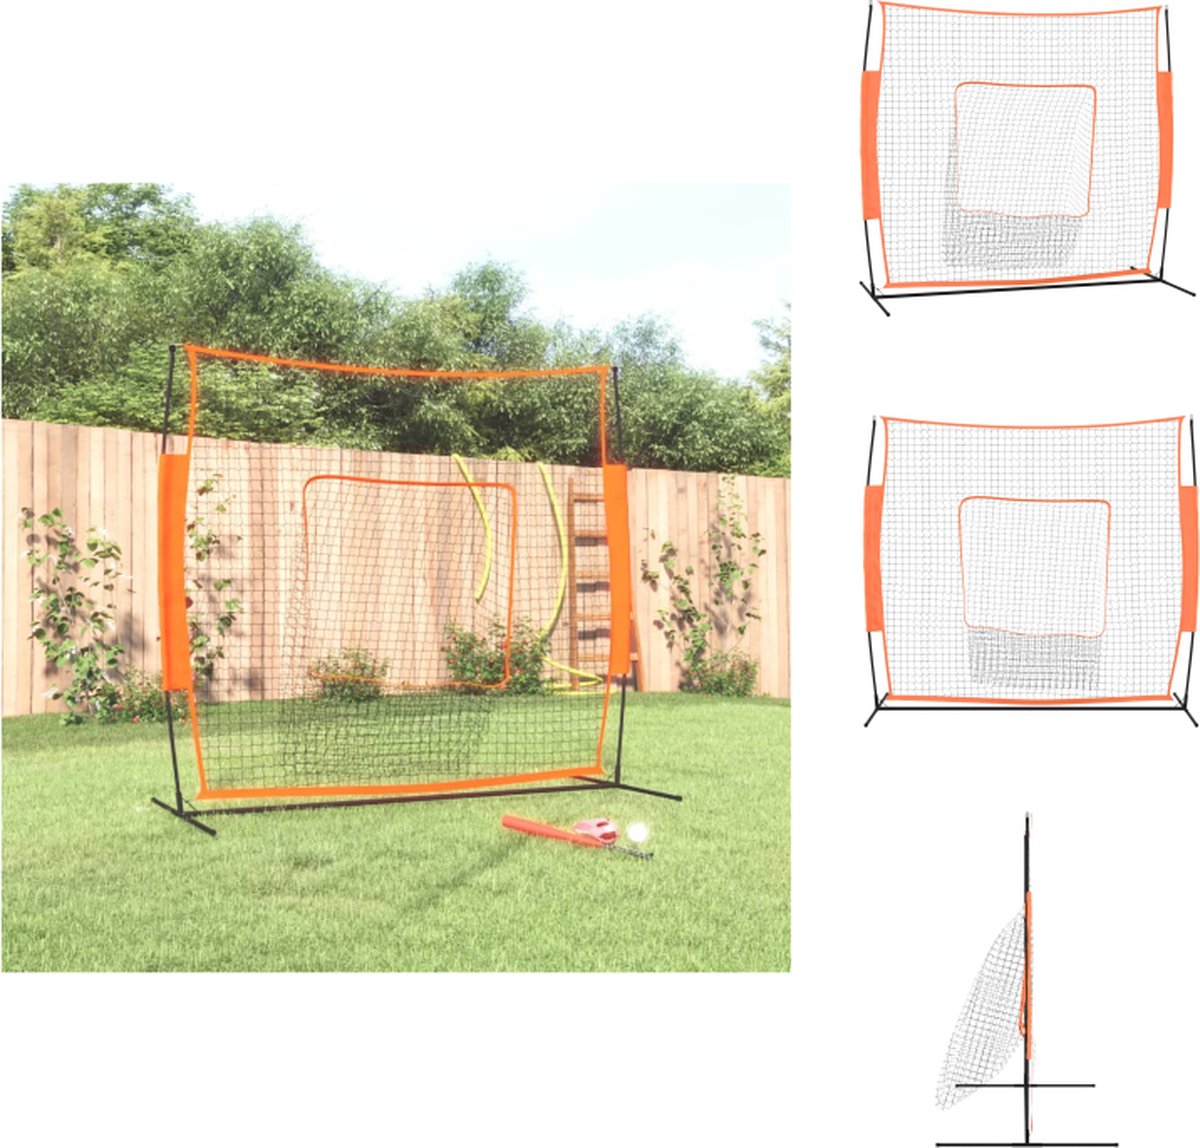 vidaXL honkbalnet - Staal en glasvezel frame - Polyester net - 219x107x212 cm - Rood en zwart - Honkbal